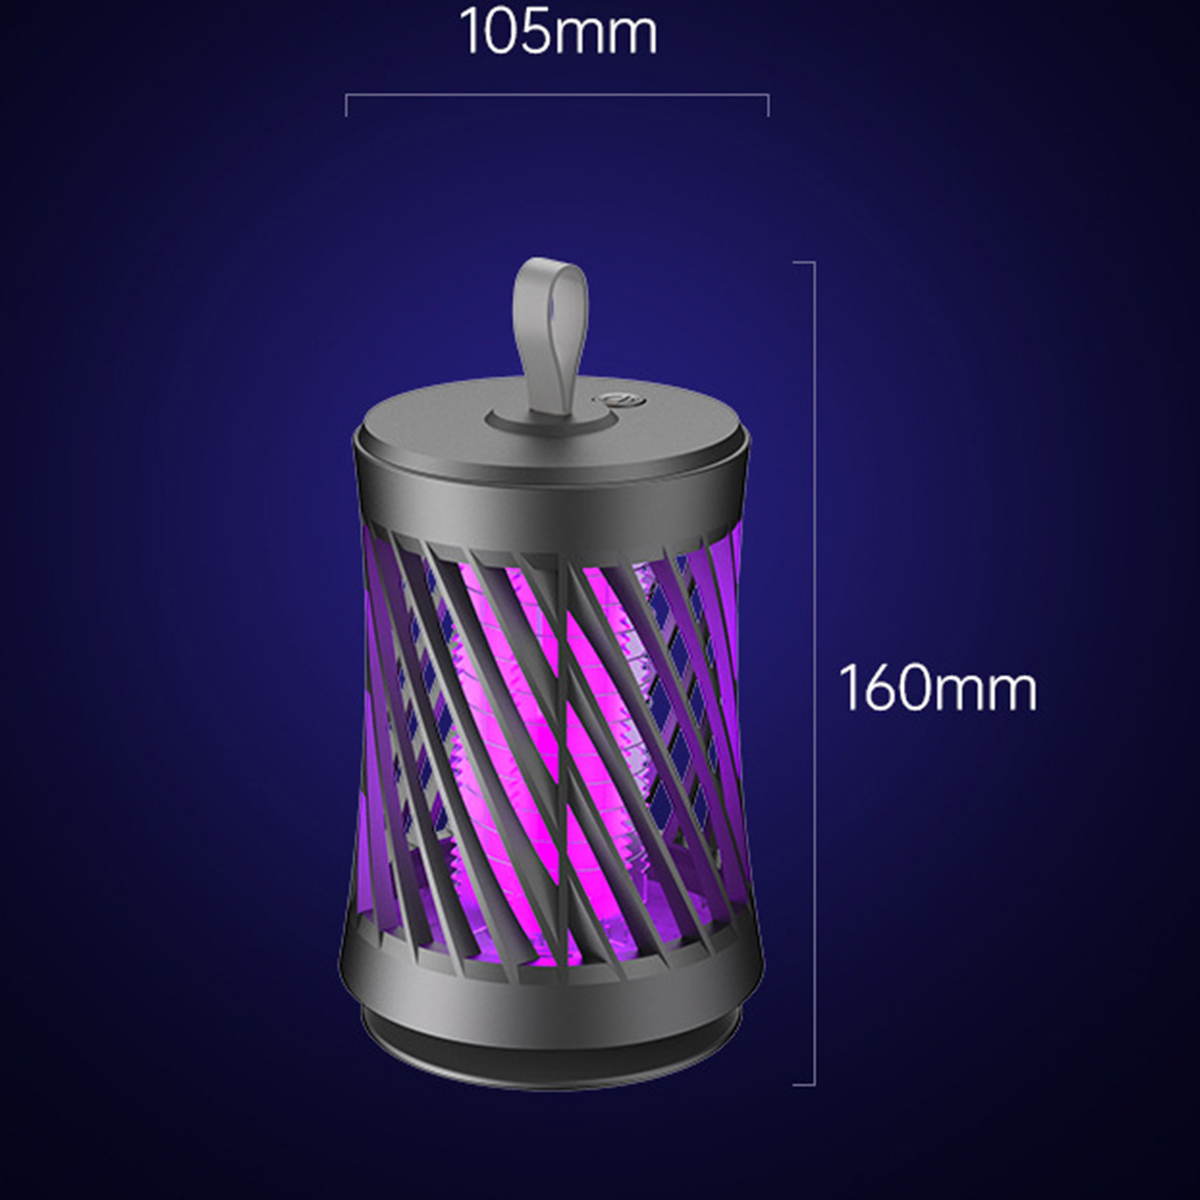 BRIGHTAKE USB Wiederaufladbare Moskito-Killer-Lampe Moskito-Fang|50sqm Photokatalysator Insektenvernichter Stiller